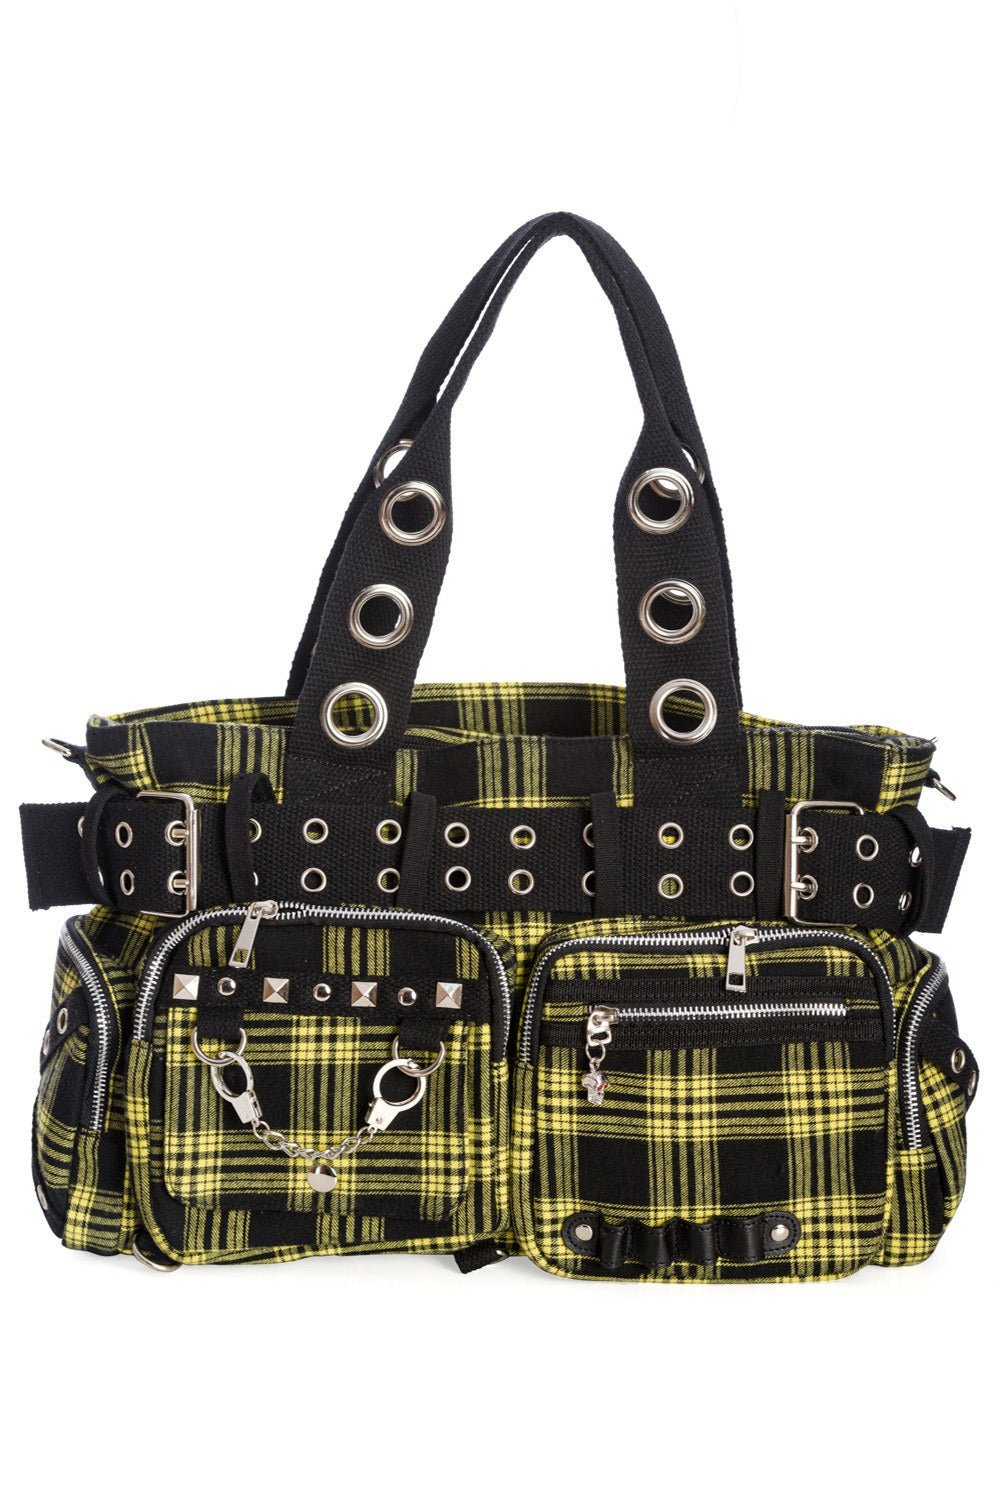 yellow and black punk handbag